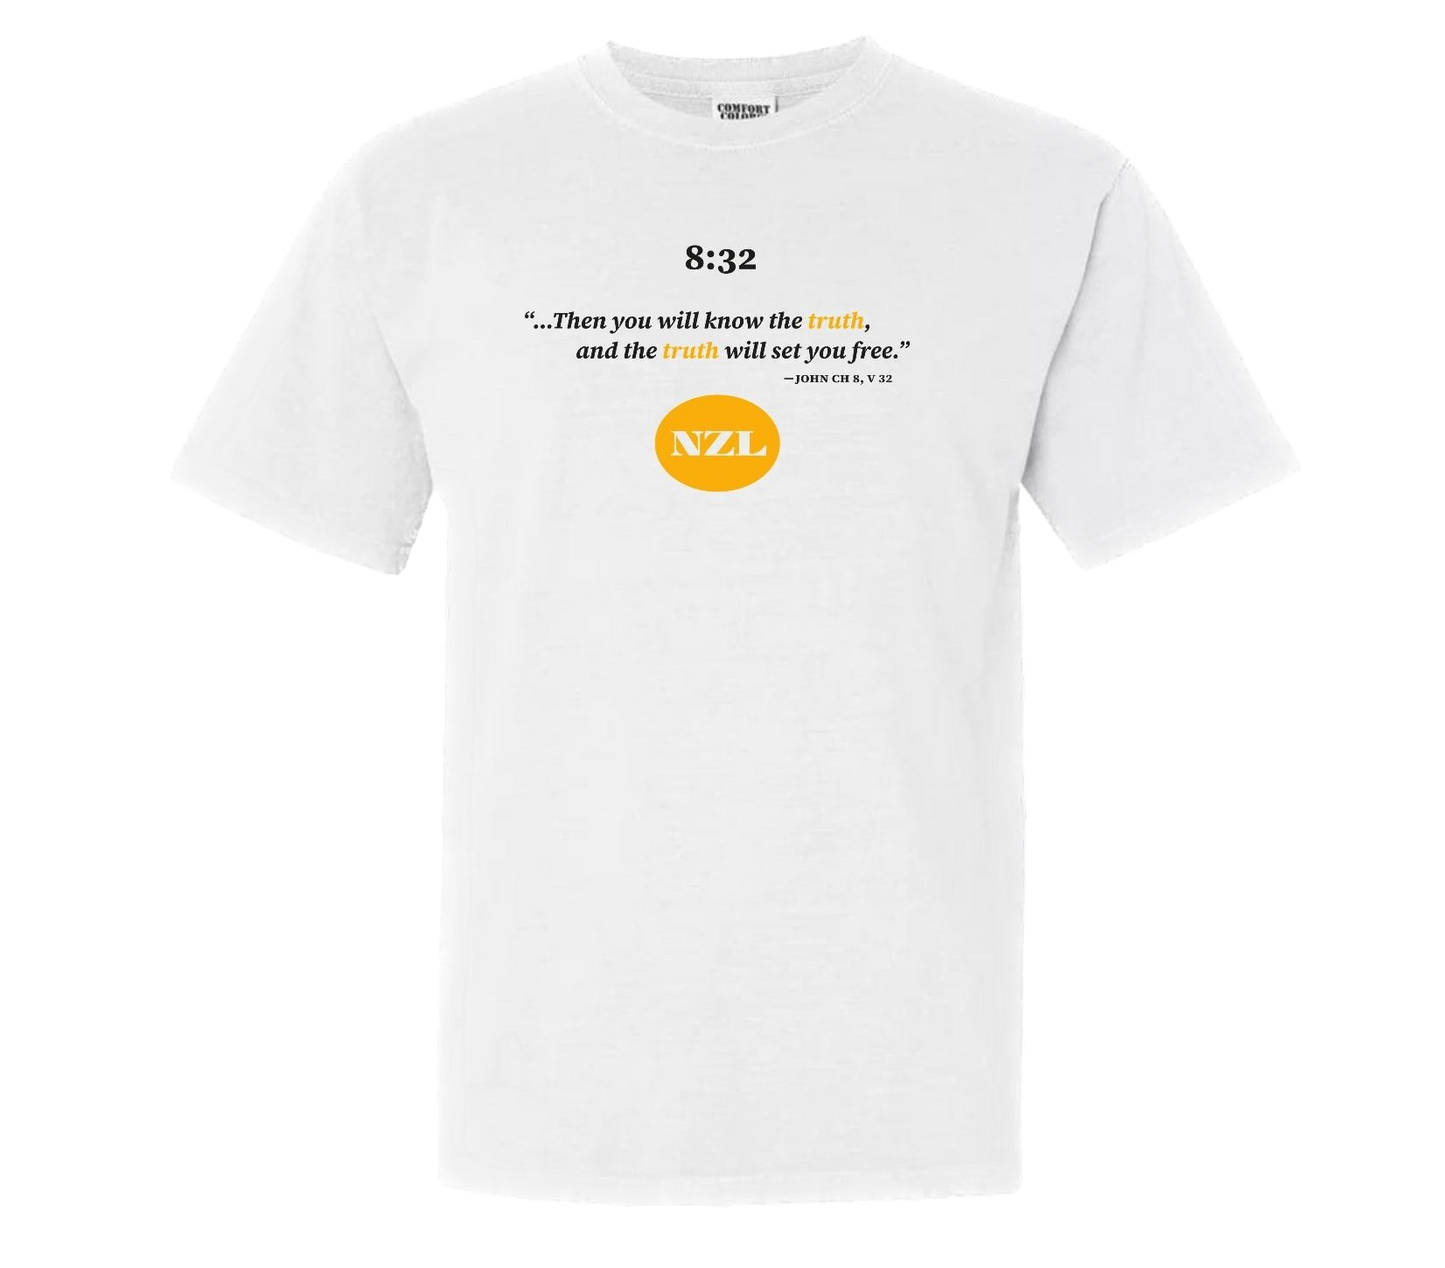 NZLoyal 8:32 T-Shirt